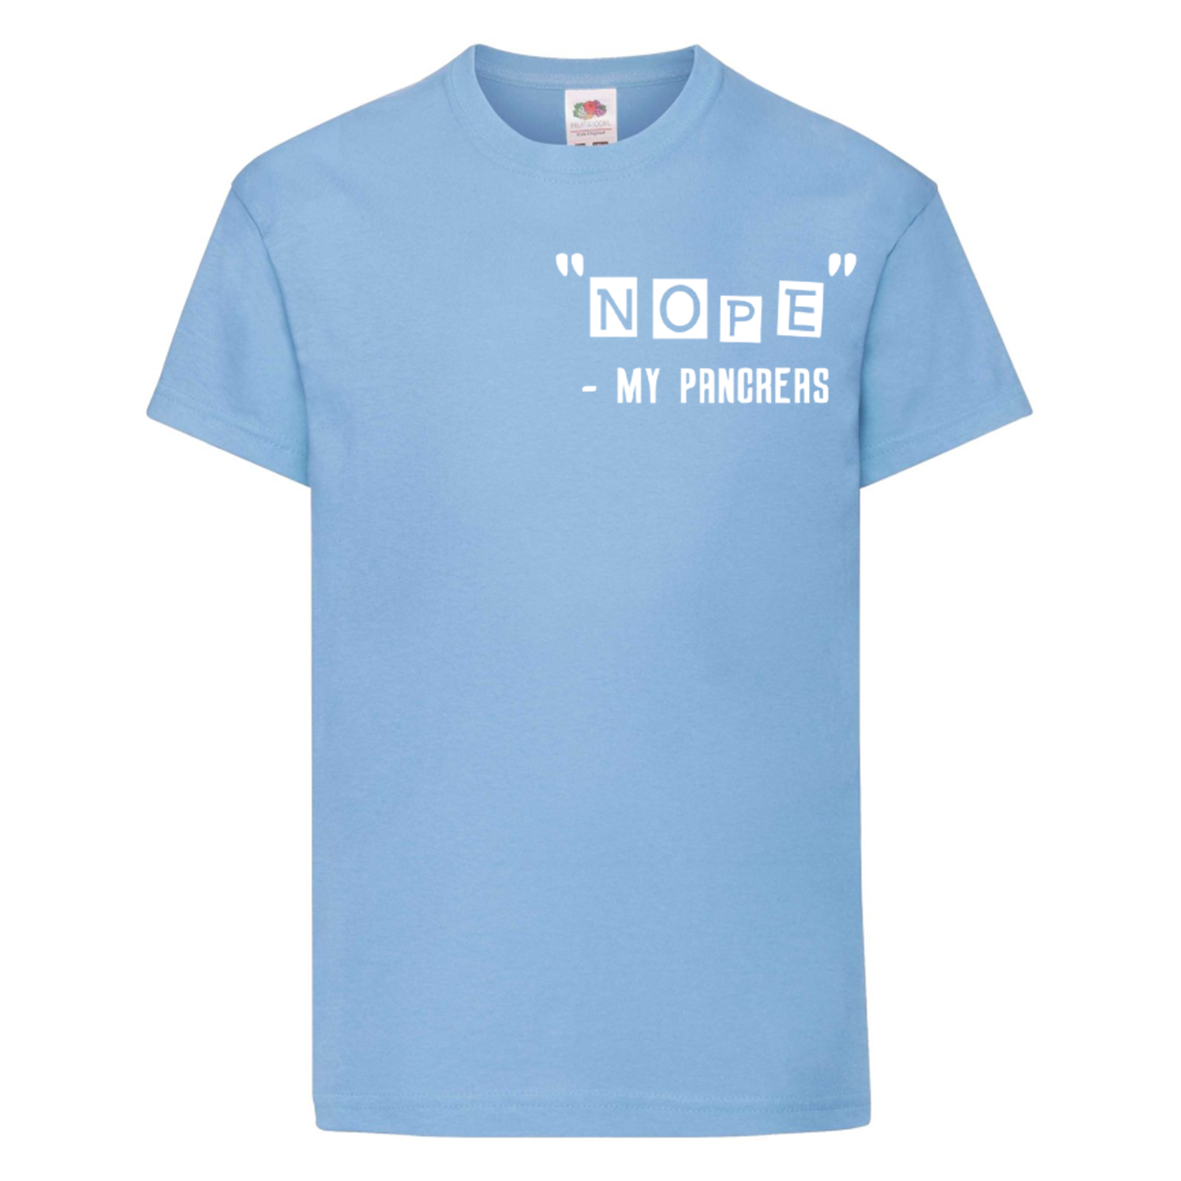 "Nope" - My Pancreas Kids T Shirt